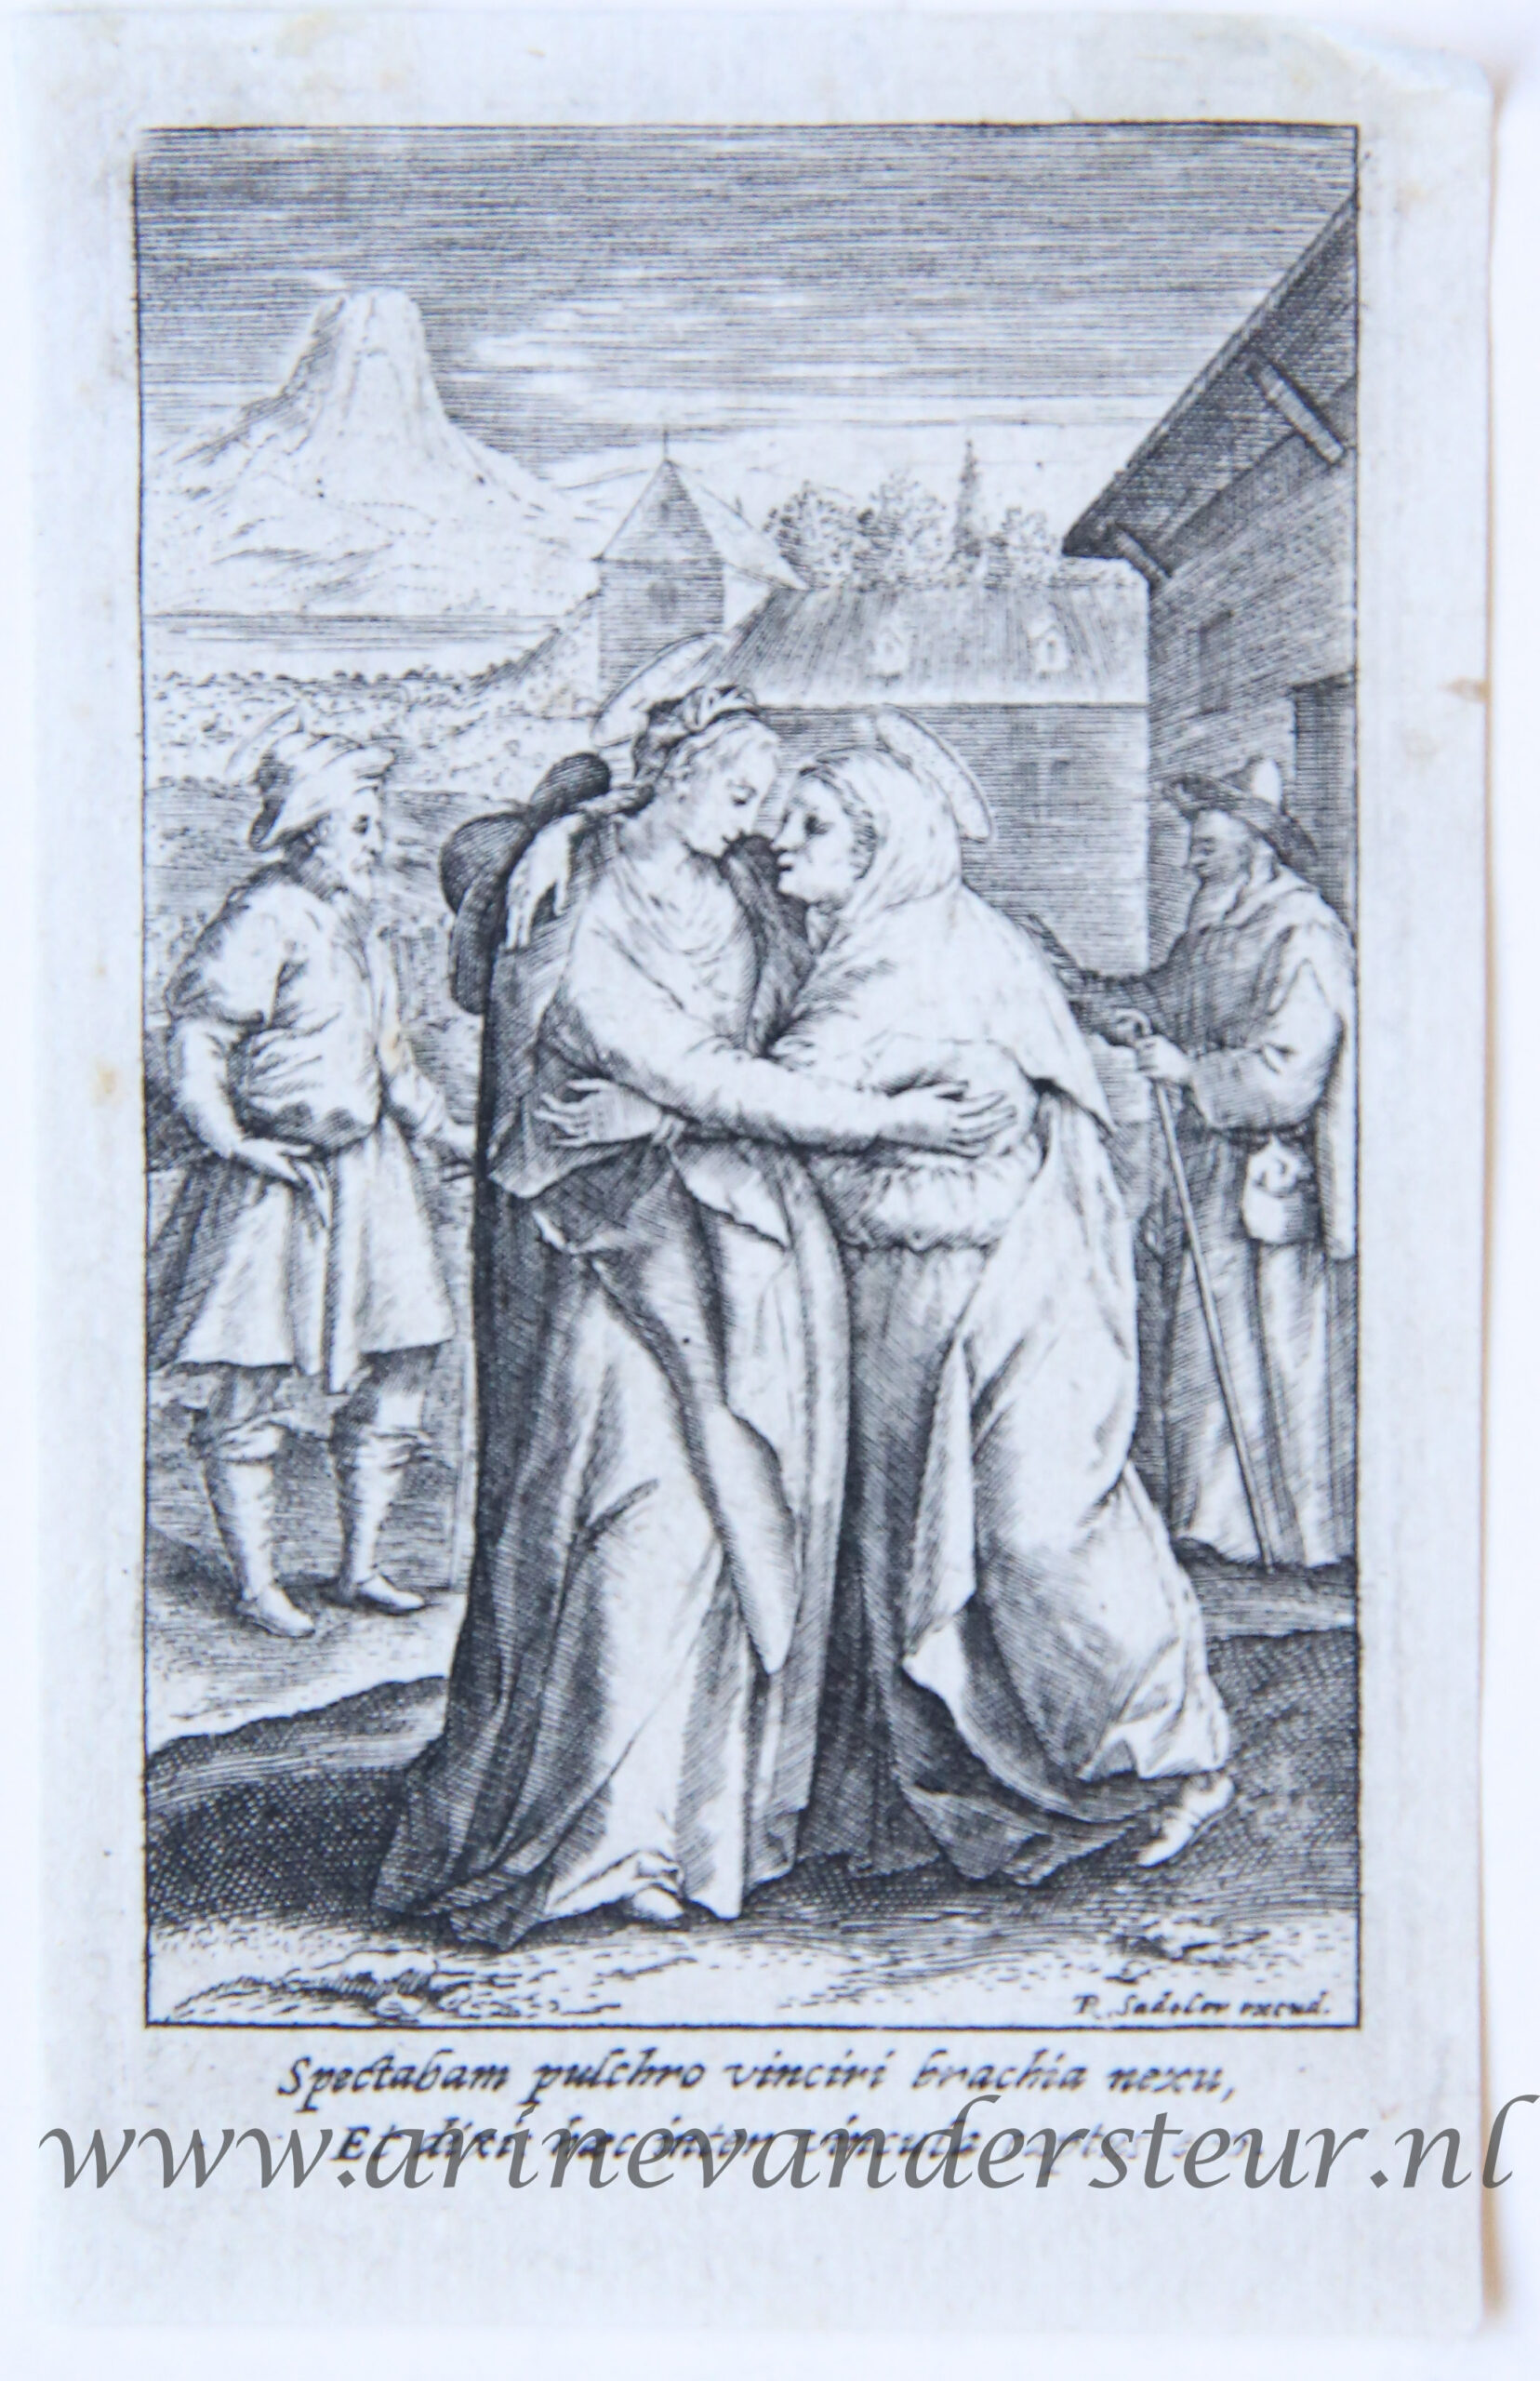 [Antique print, engraving] The Visitation/De visitatie van de maagd Maria, published ca. 1617.